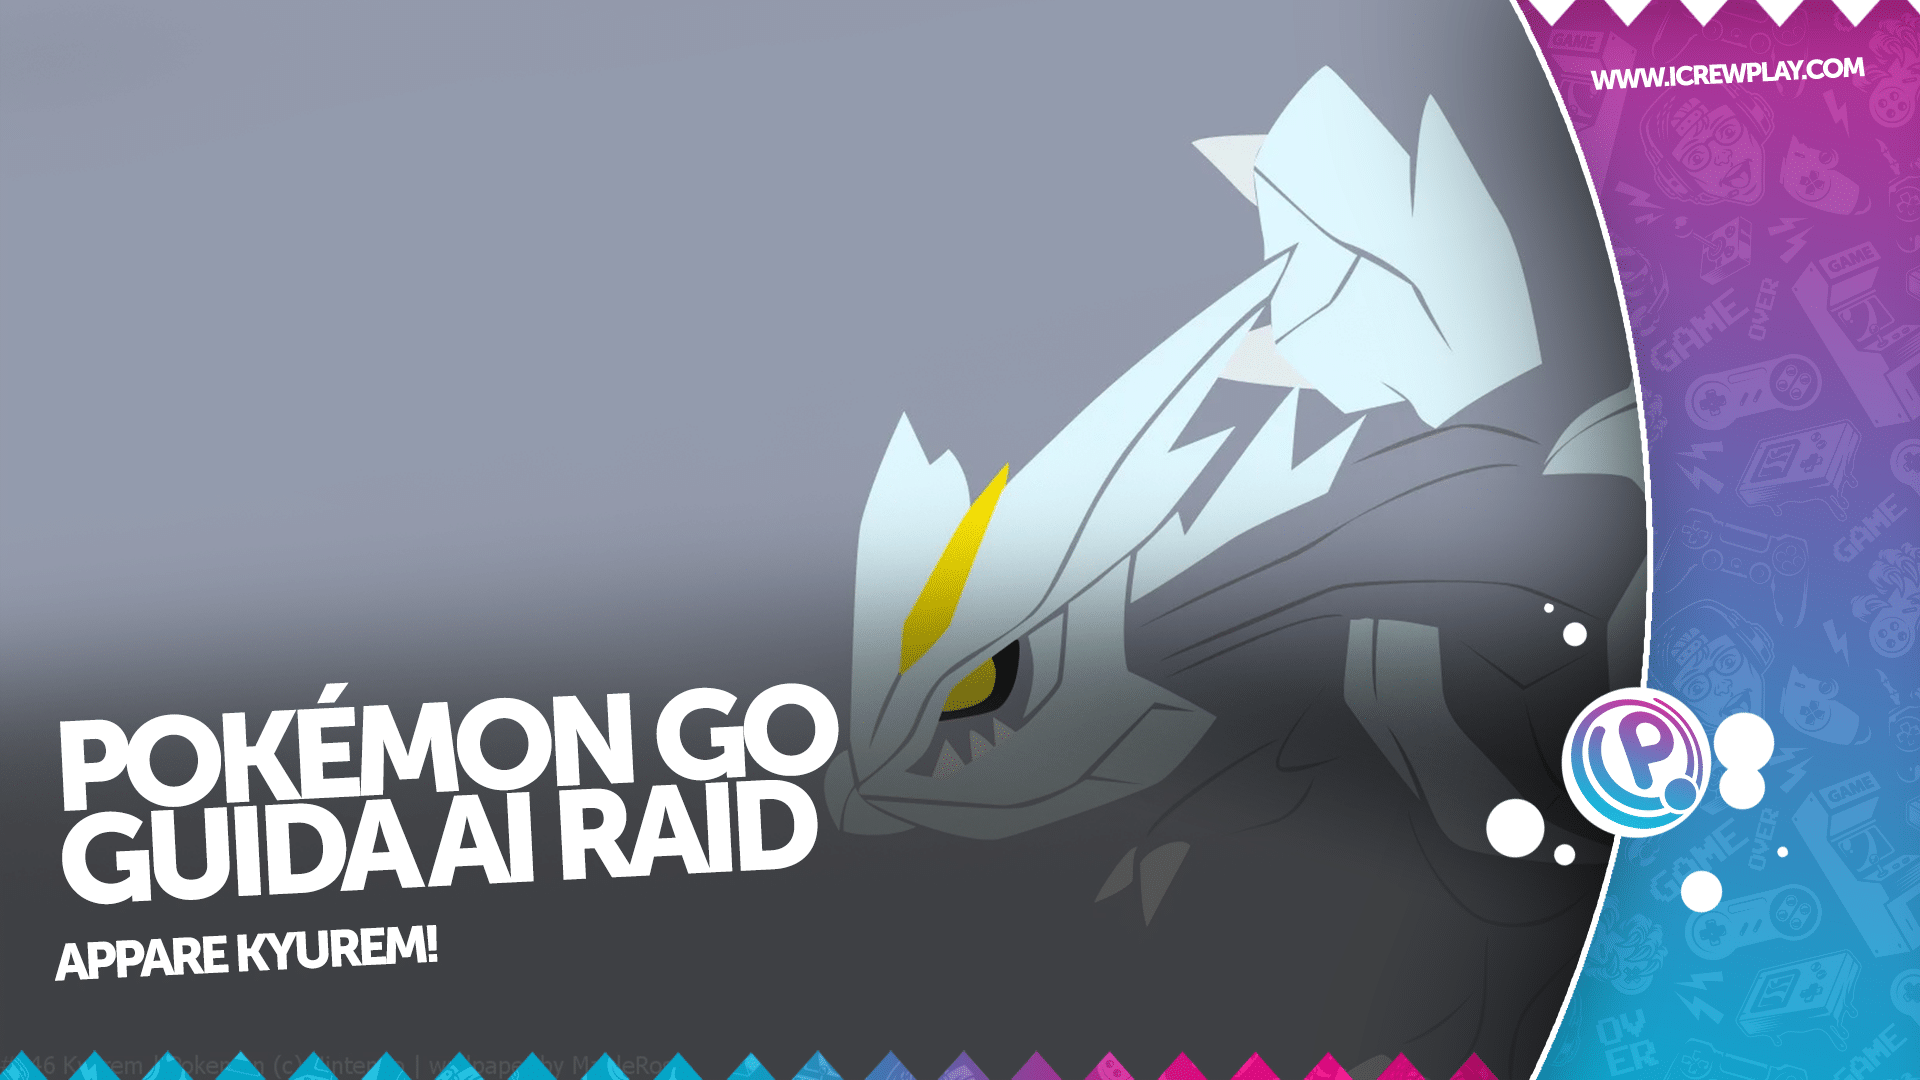 Pokémon GO, guida ai raid: appare Kyurem!